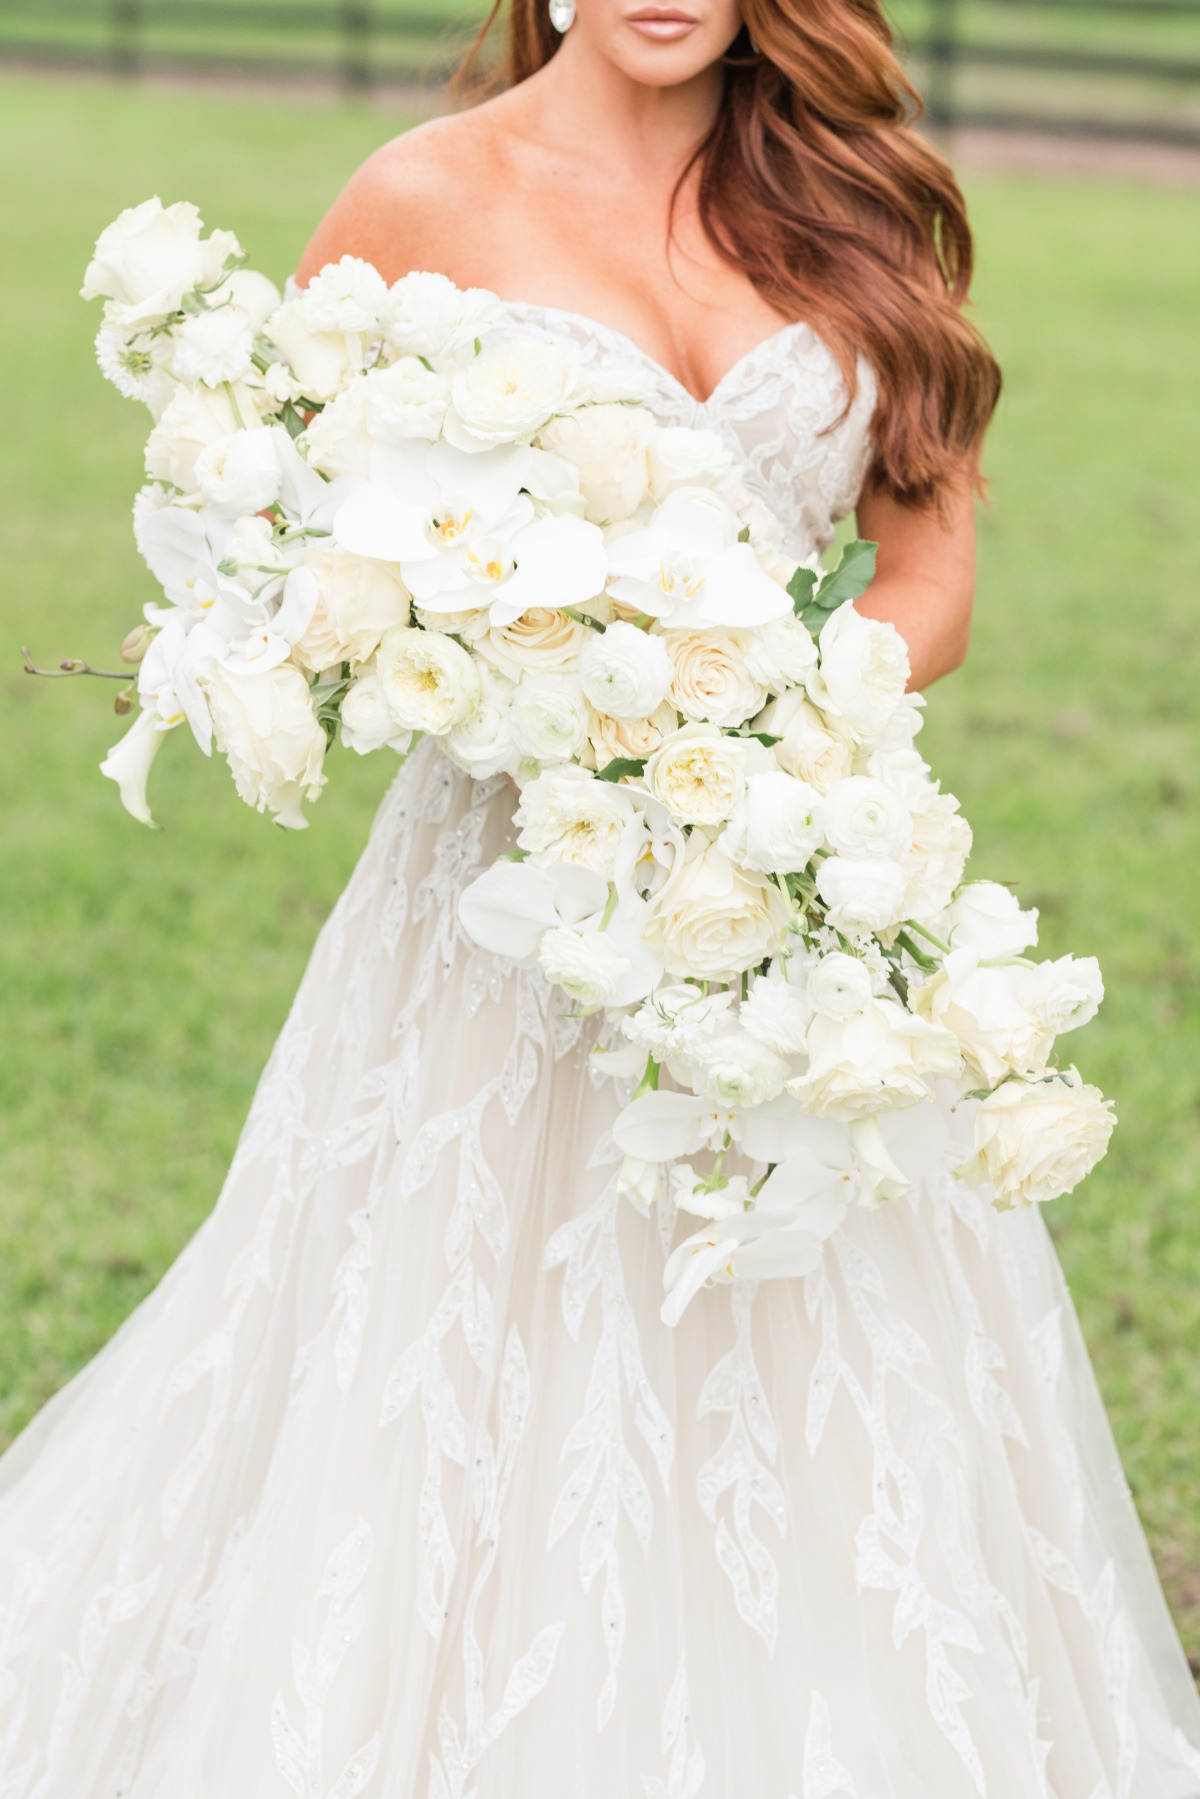 All-white wedding bouquet